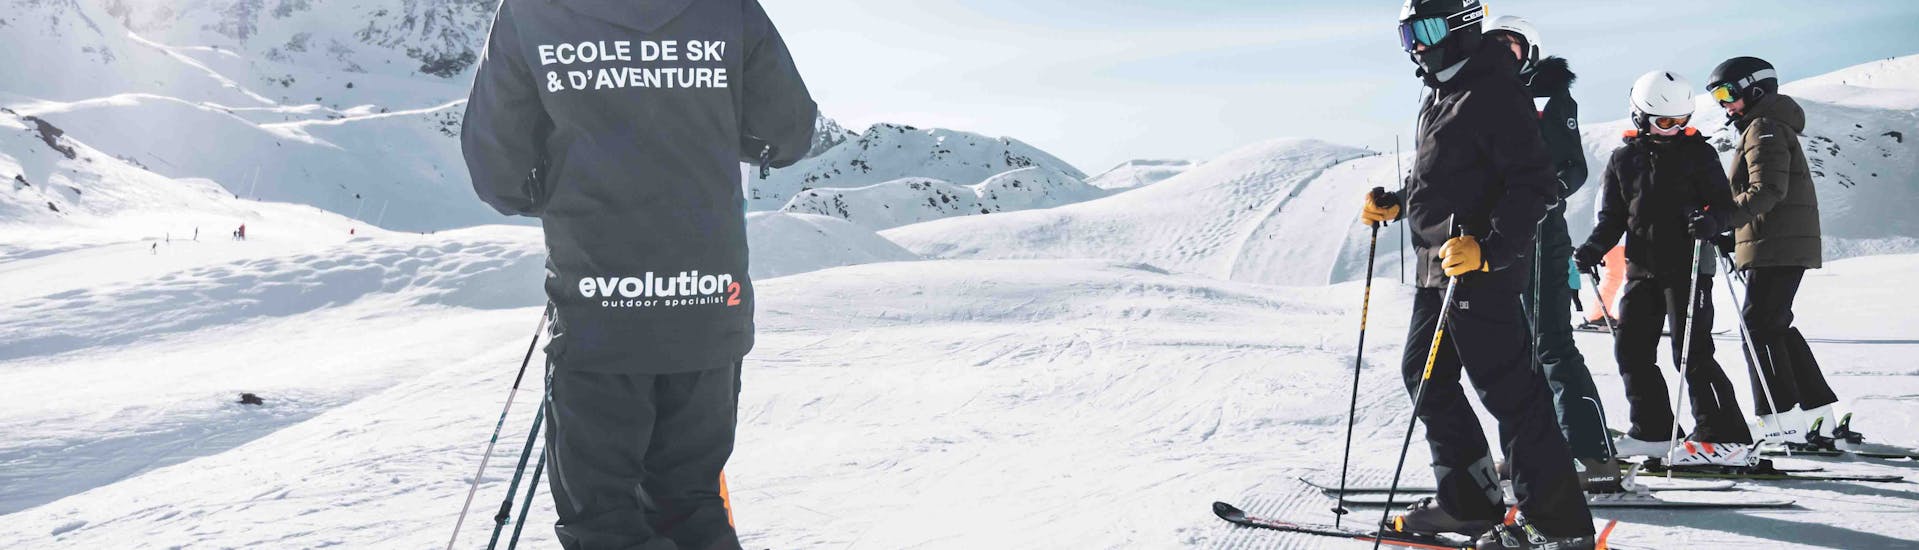 Skikurse für Erwachsene für alle Levels - Arc 1800 mit Arc Aventures by Evolution 2 1800 .